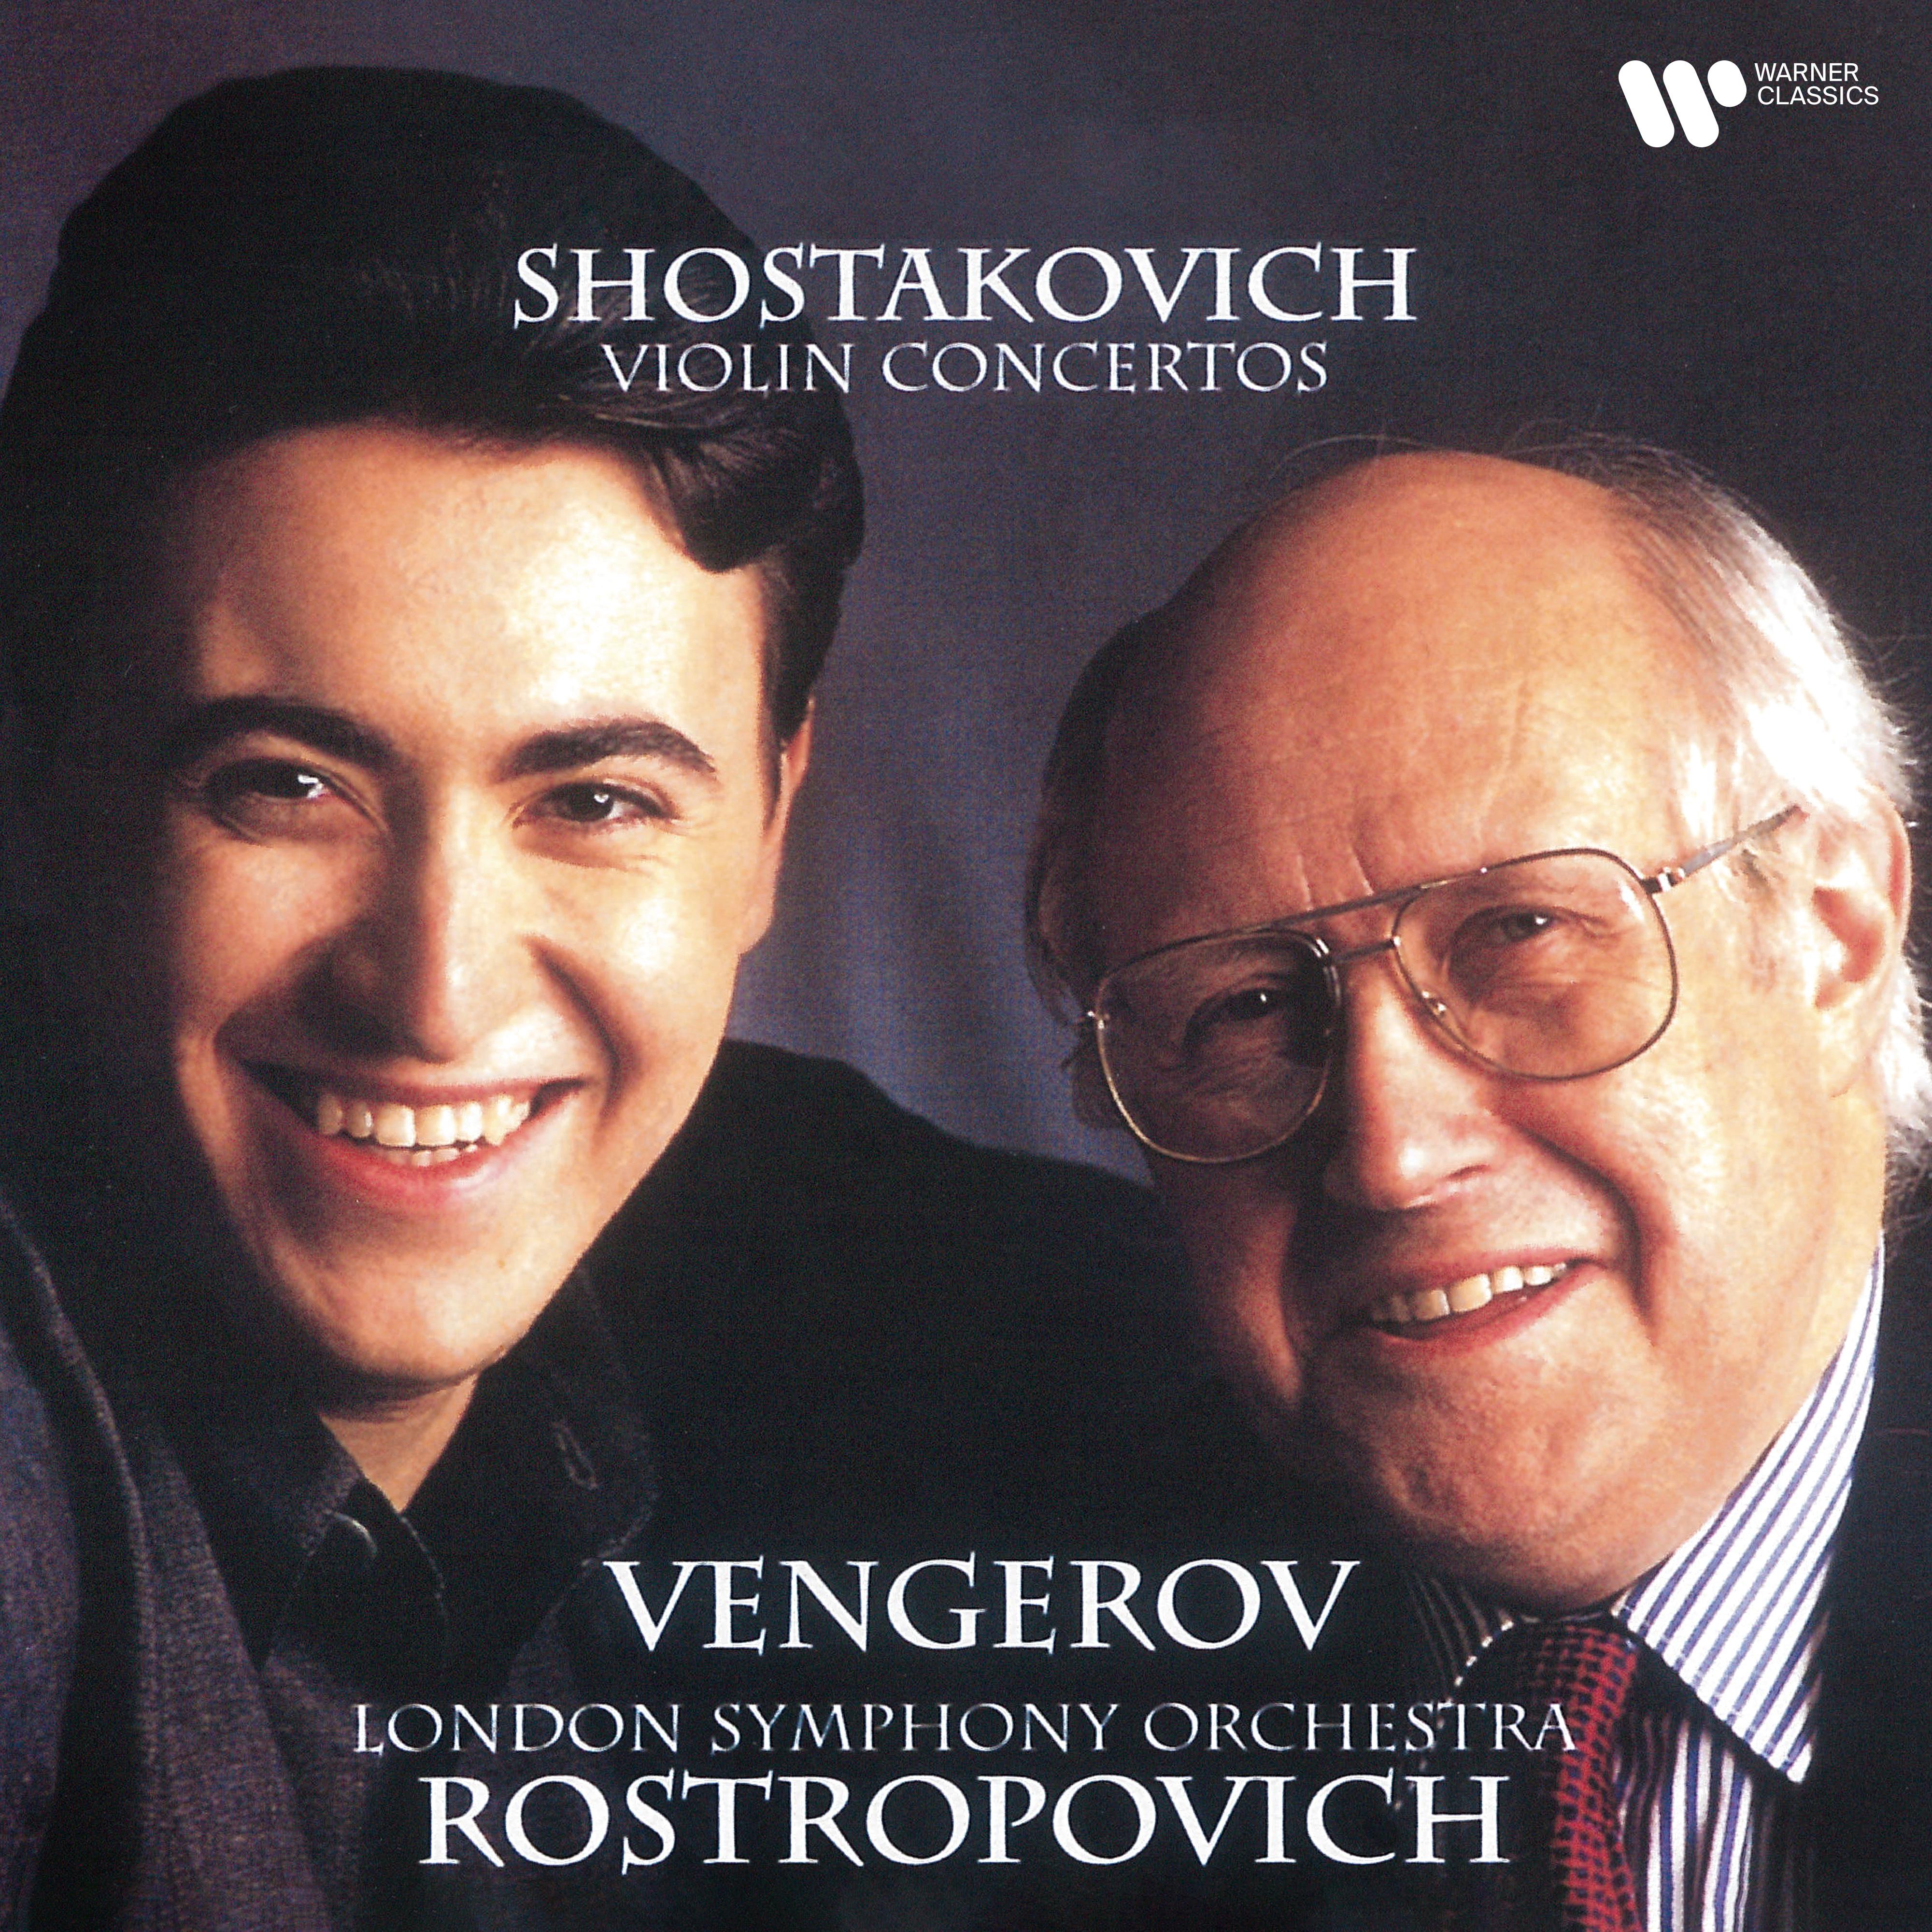 Maxim Vengerov - Violin Concerto No. 1 in A Minor, Op. 77:I. Nocturne. Moderato